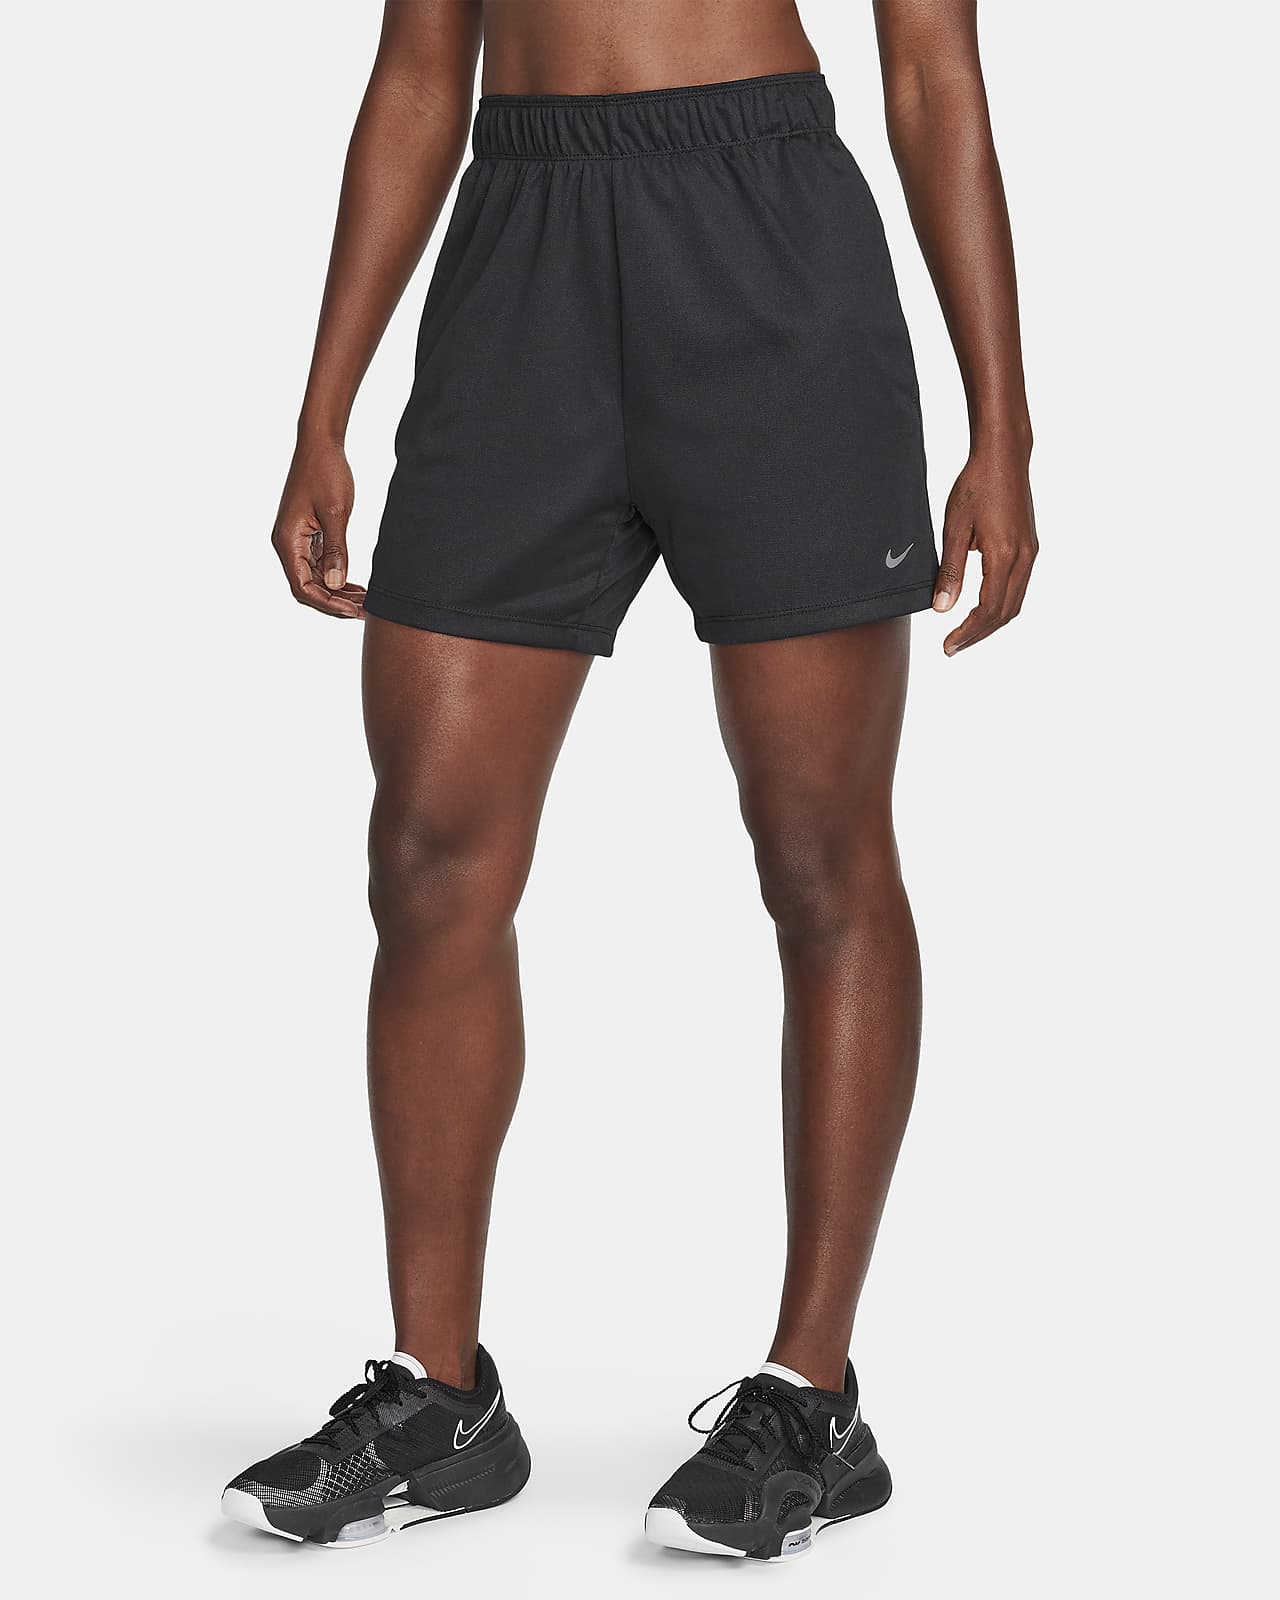 Ofodrade träningsshorts Nike Attack Dri-FIT med medelhög midja 13 cm för kvinnor